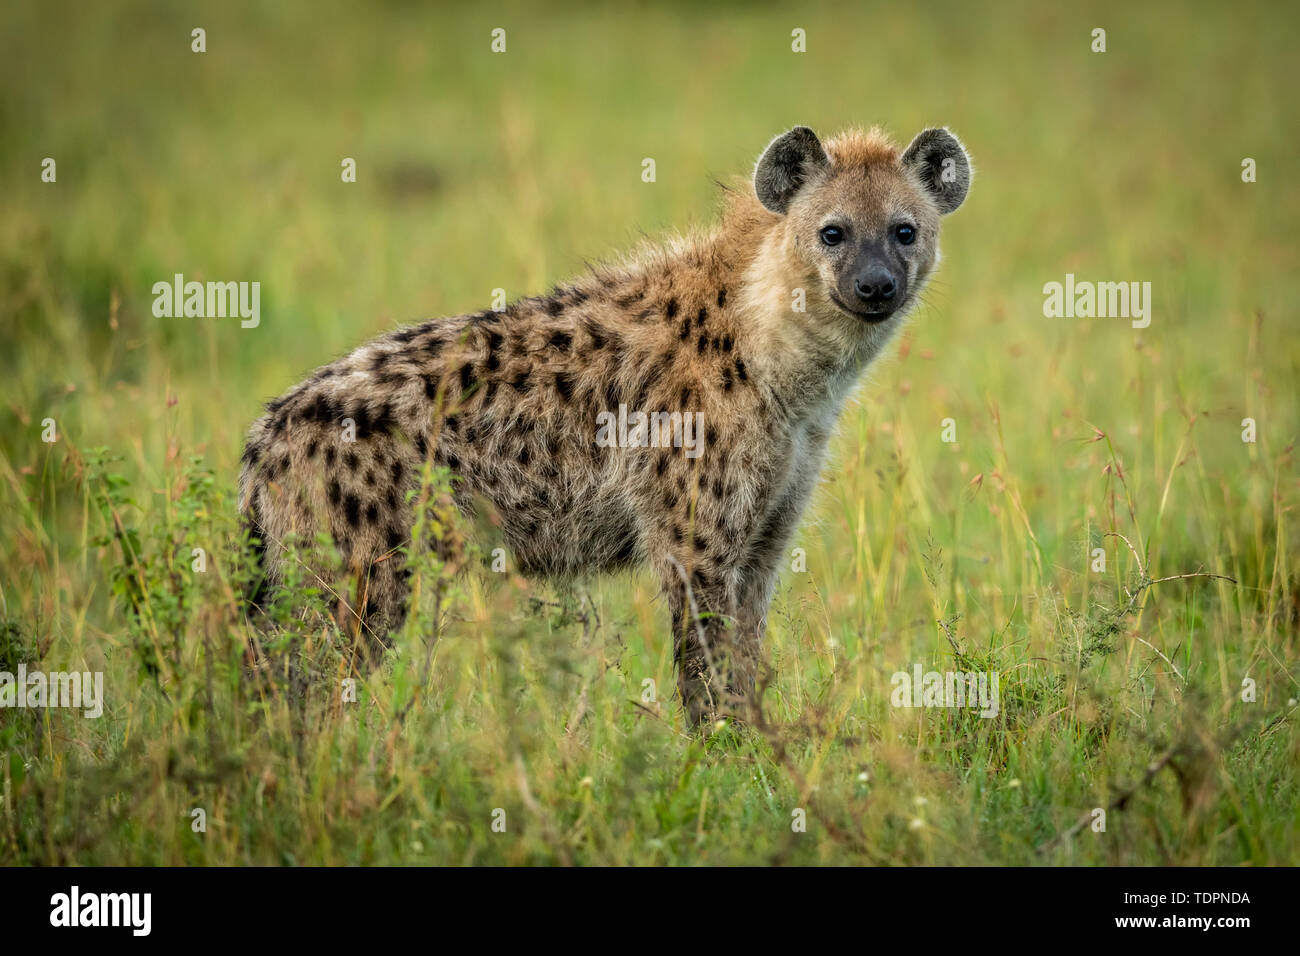 L'Hyène tachetée (Crocuta crocuta) se tient dans l'herbe à regarder l'appareil photo, le Parc National du Serengeti, Tanzanie Banque D'Images